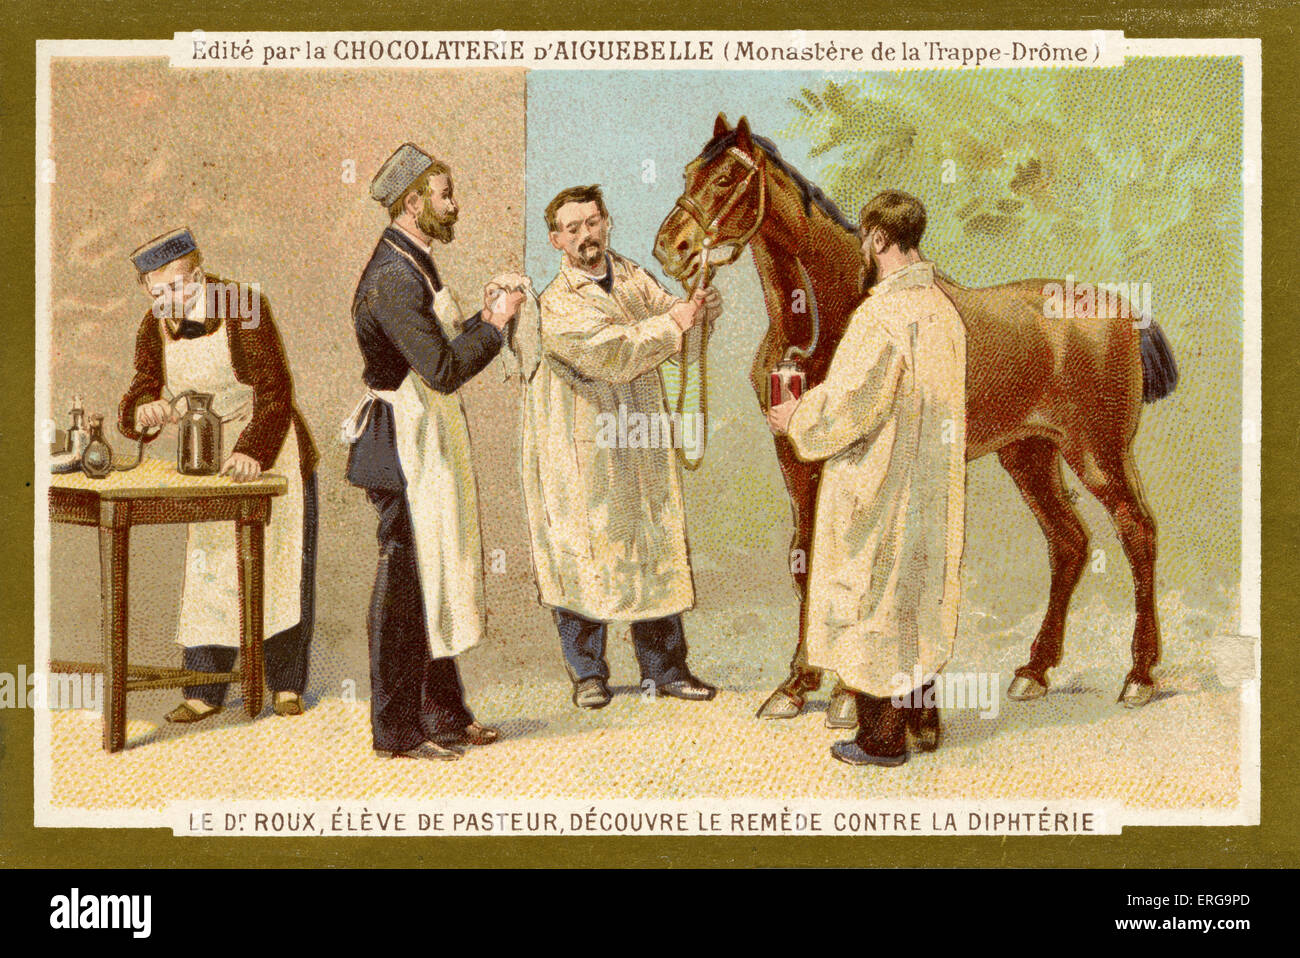 Pierre Paul Émile Roux (1853-1933), alumno y después colega de Louis Pasteur descubrió la cura para la difteria. Desde Foto de stock